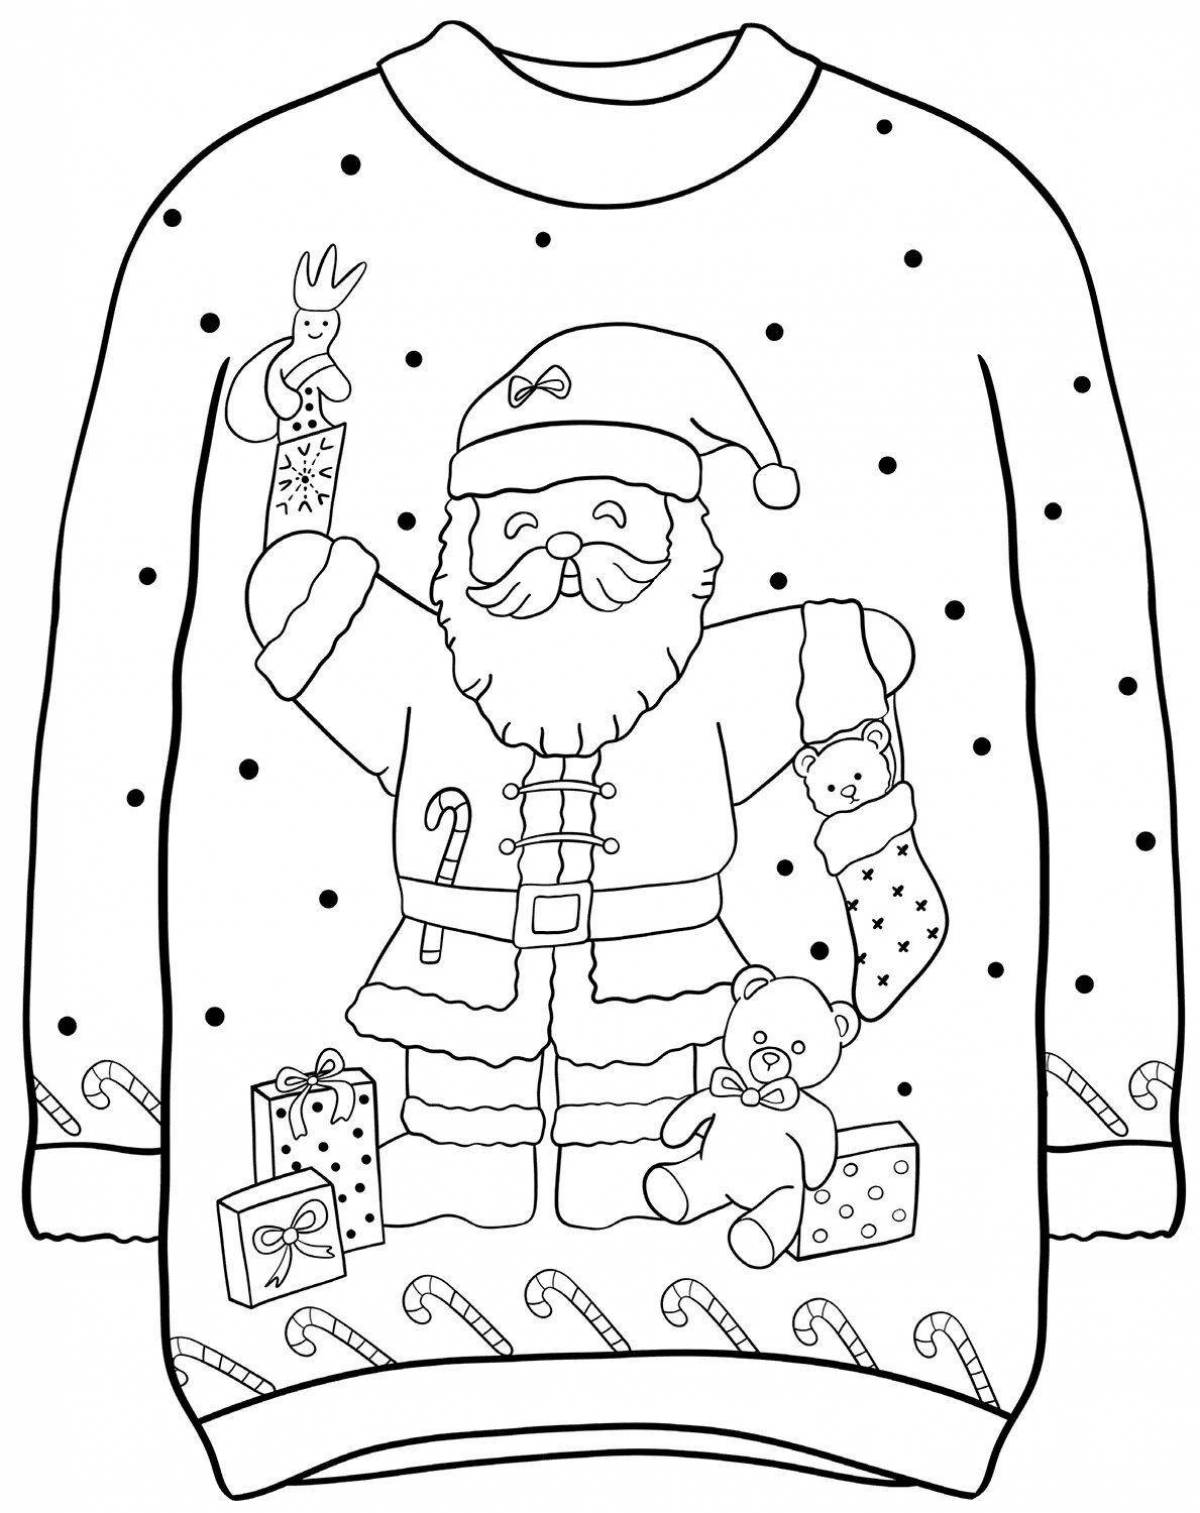 Сказочная страница раскраски свитера для детей